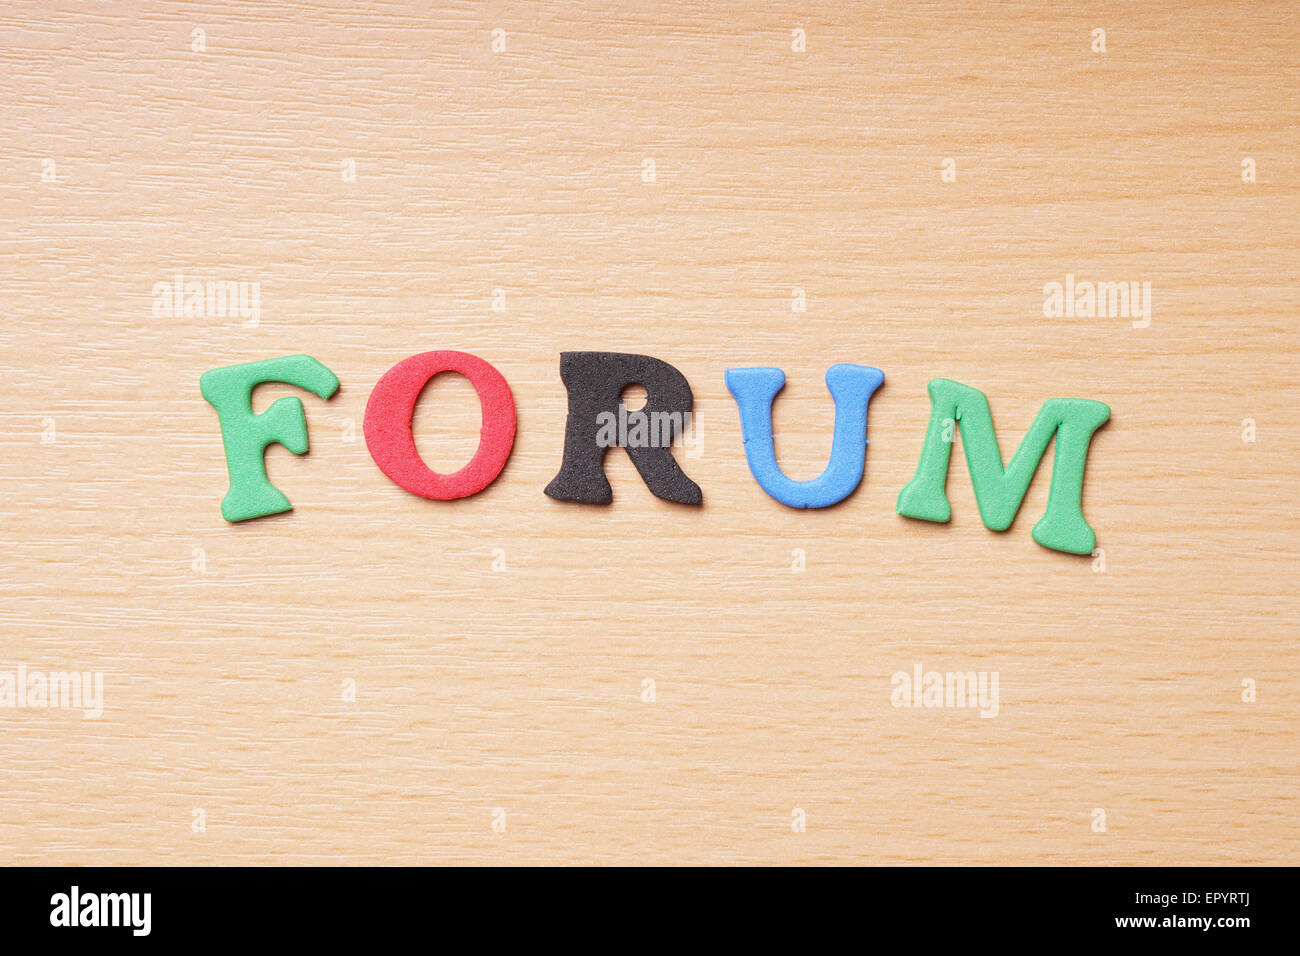 forum in foam rubber letters Stock Photo